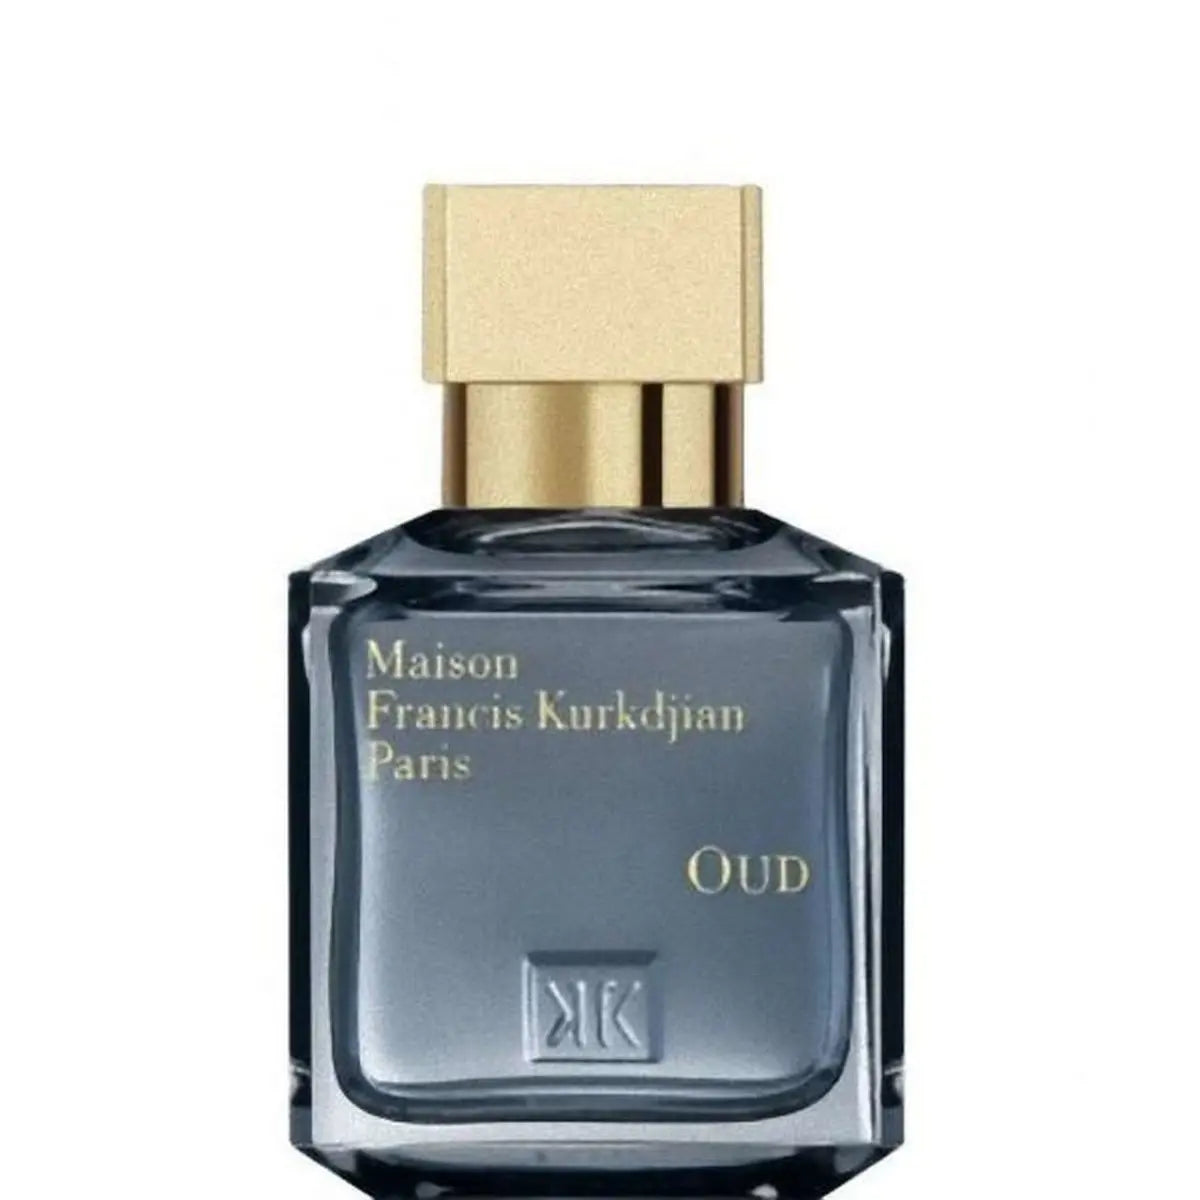 Francis kurkdjian Oud Eau de Parfum - 200 ml